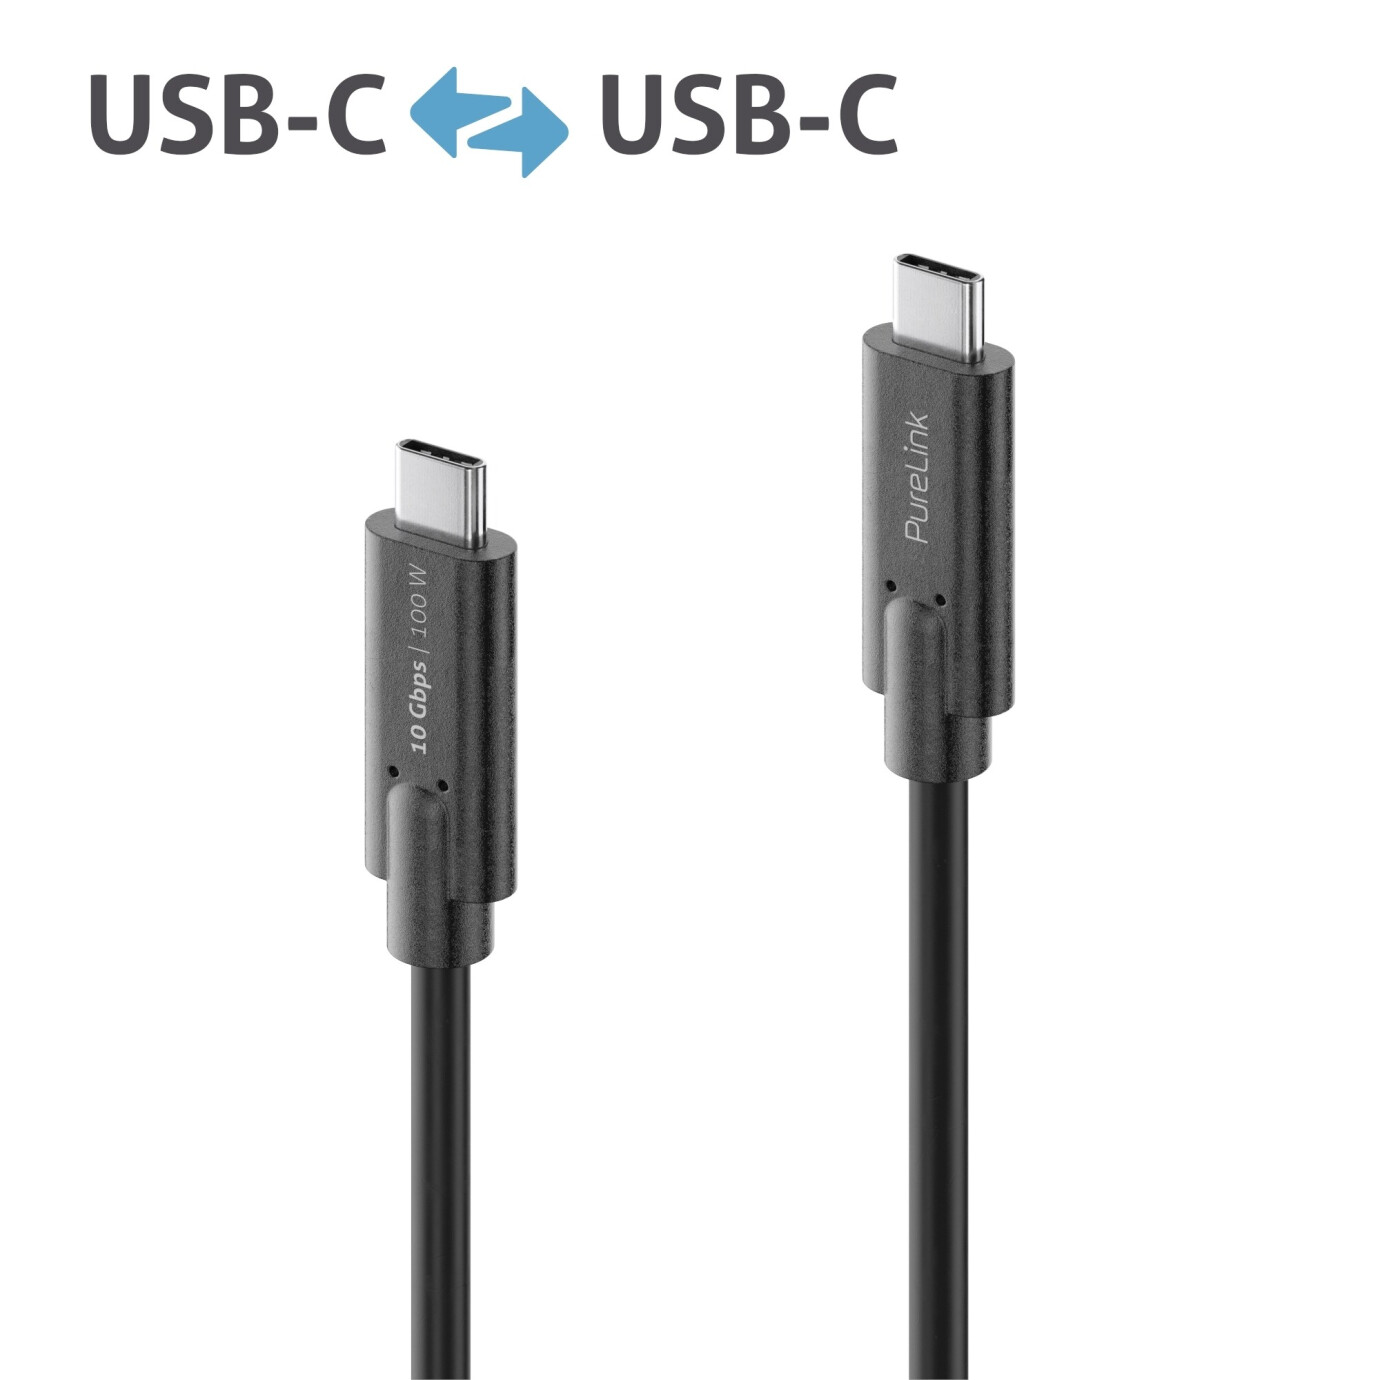 Purelink IS2511-005 USB-C auf USB-C (Gen 2) Kabel 0,5m schwarz